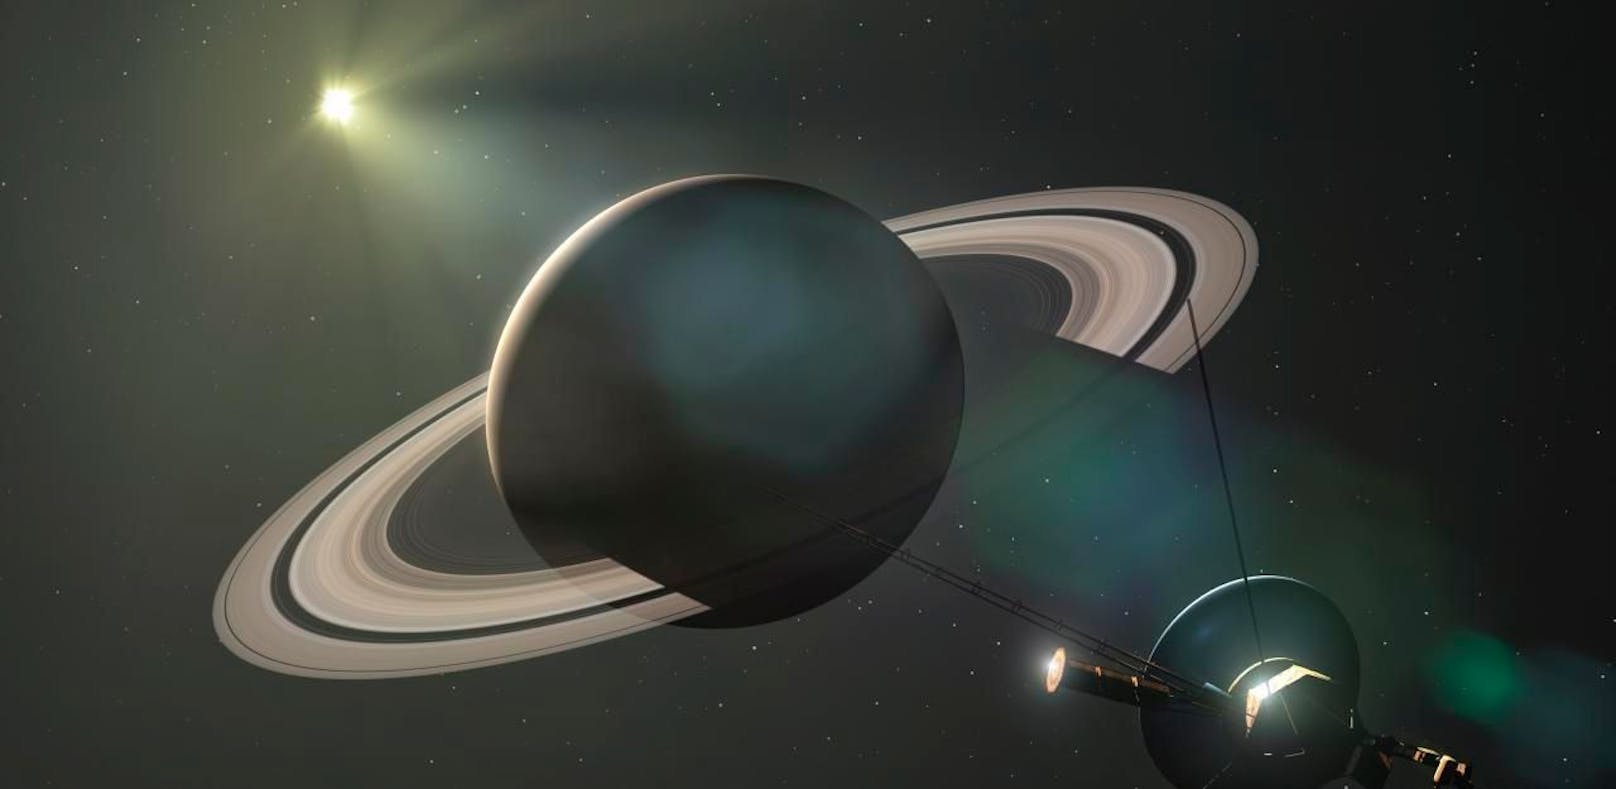 Einfach futsch: Saturn verliert seine Ringe